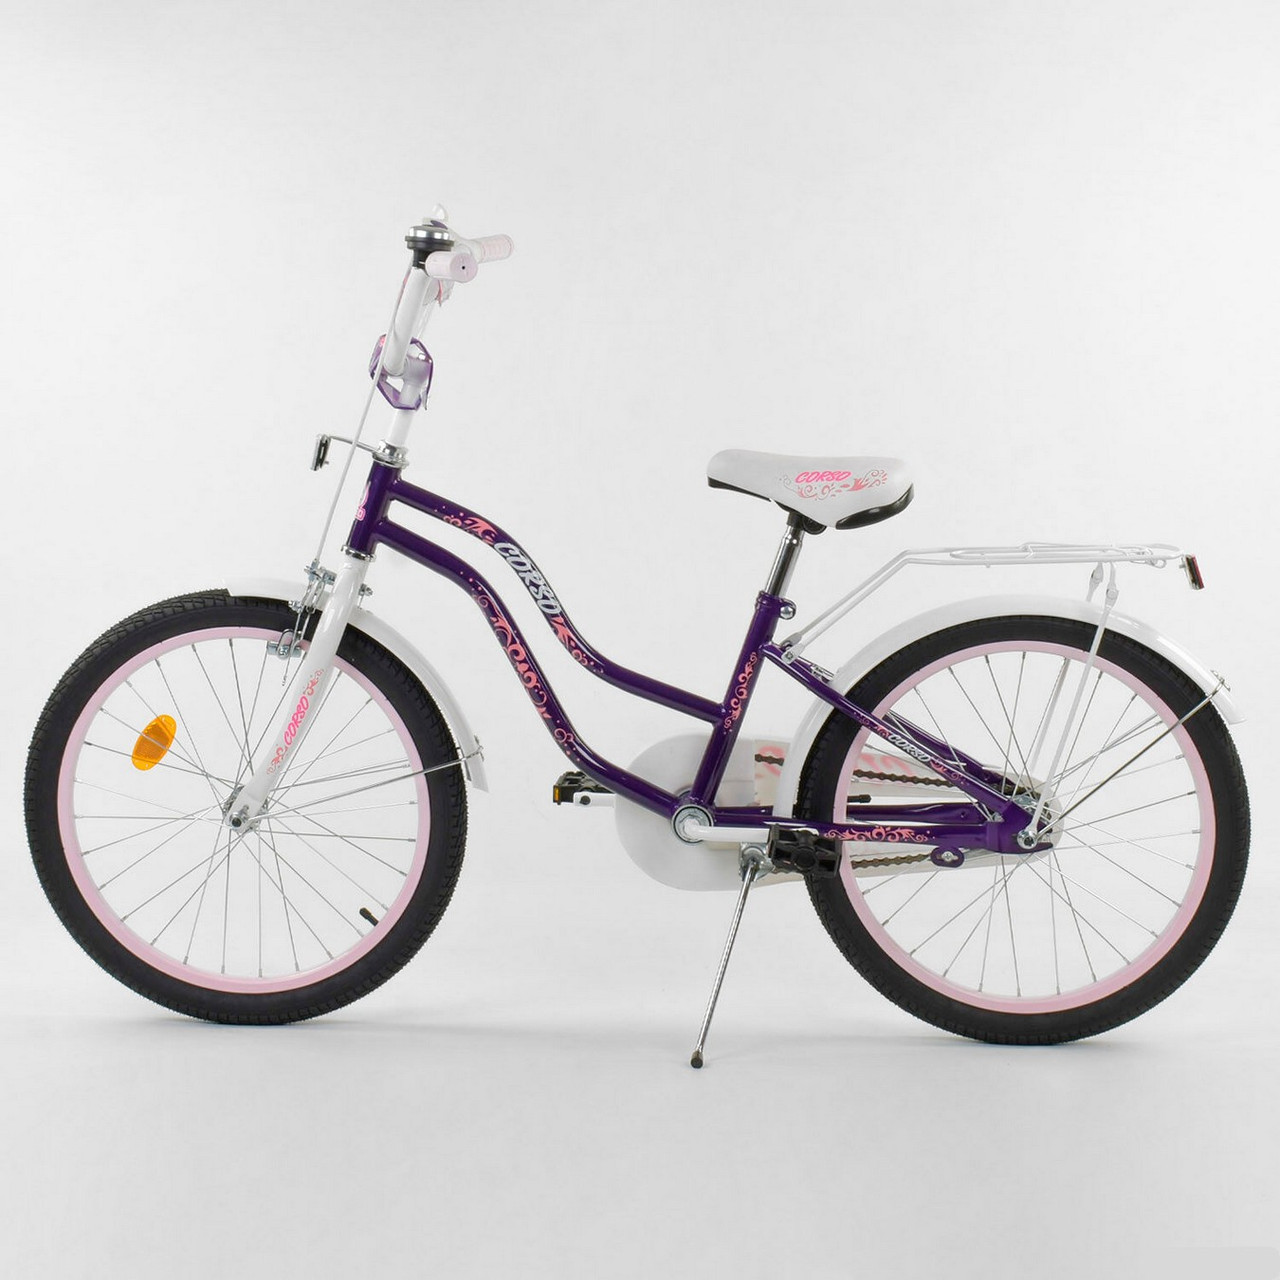 

Двухколесный подростковый велосипед 20". От 6 лет. Подножка. Каретка американка. Фиолетовый. CORSO. Т-09310